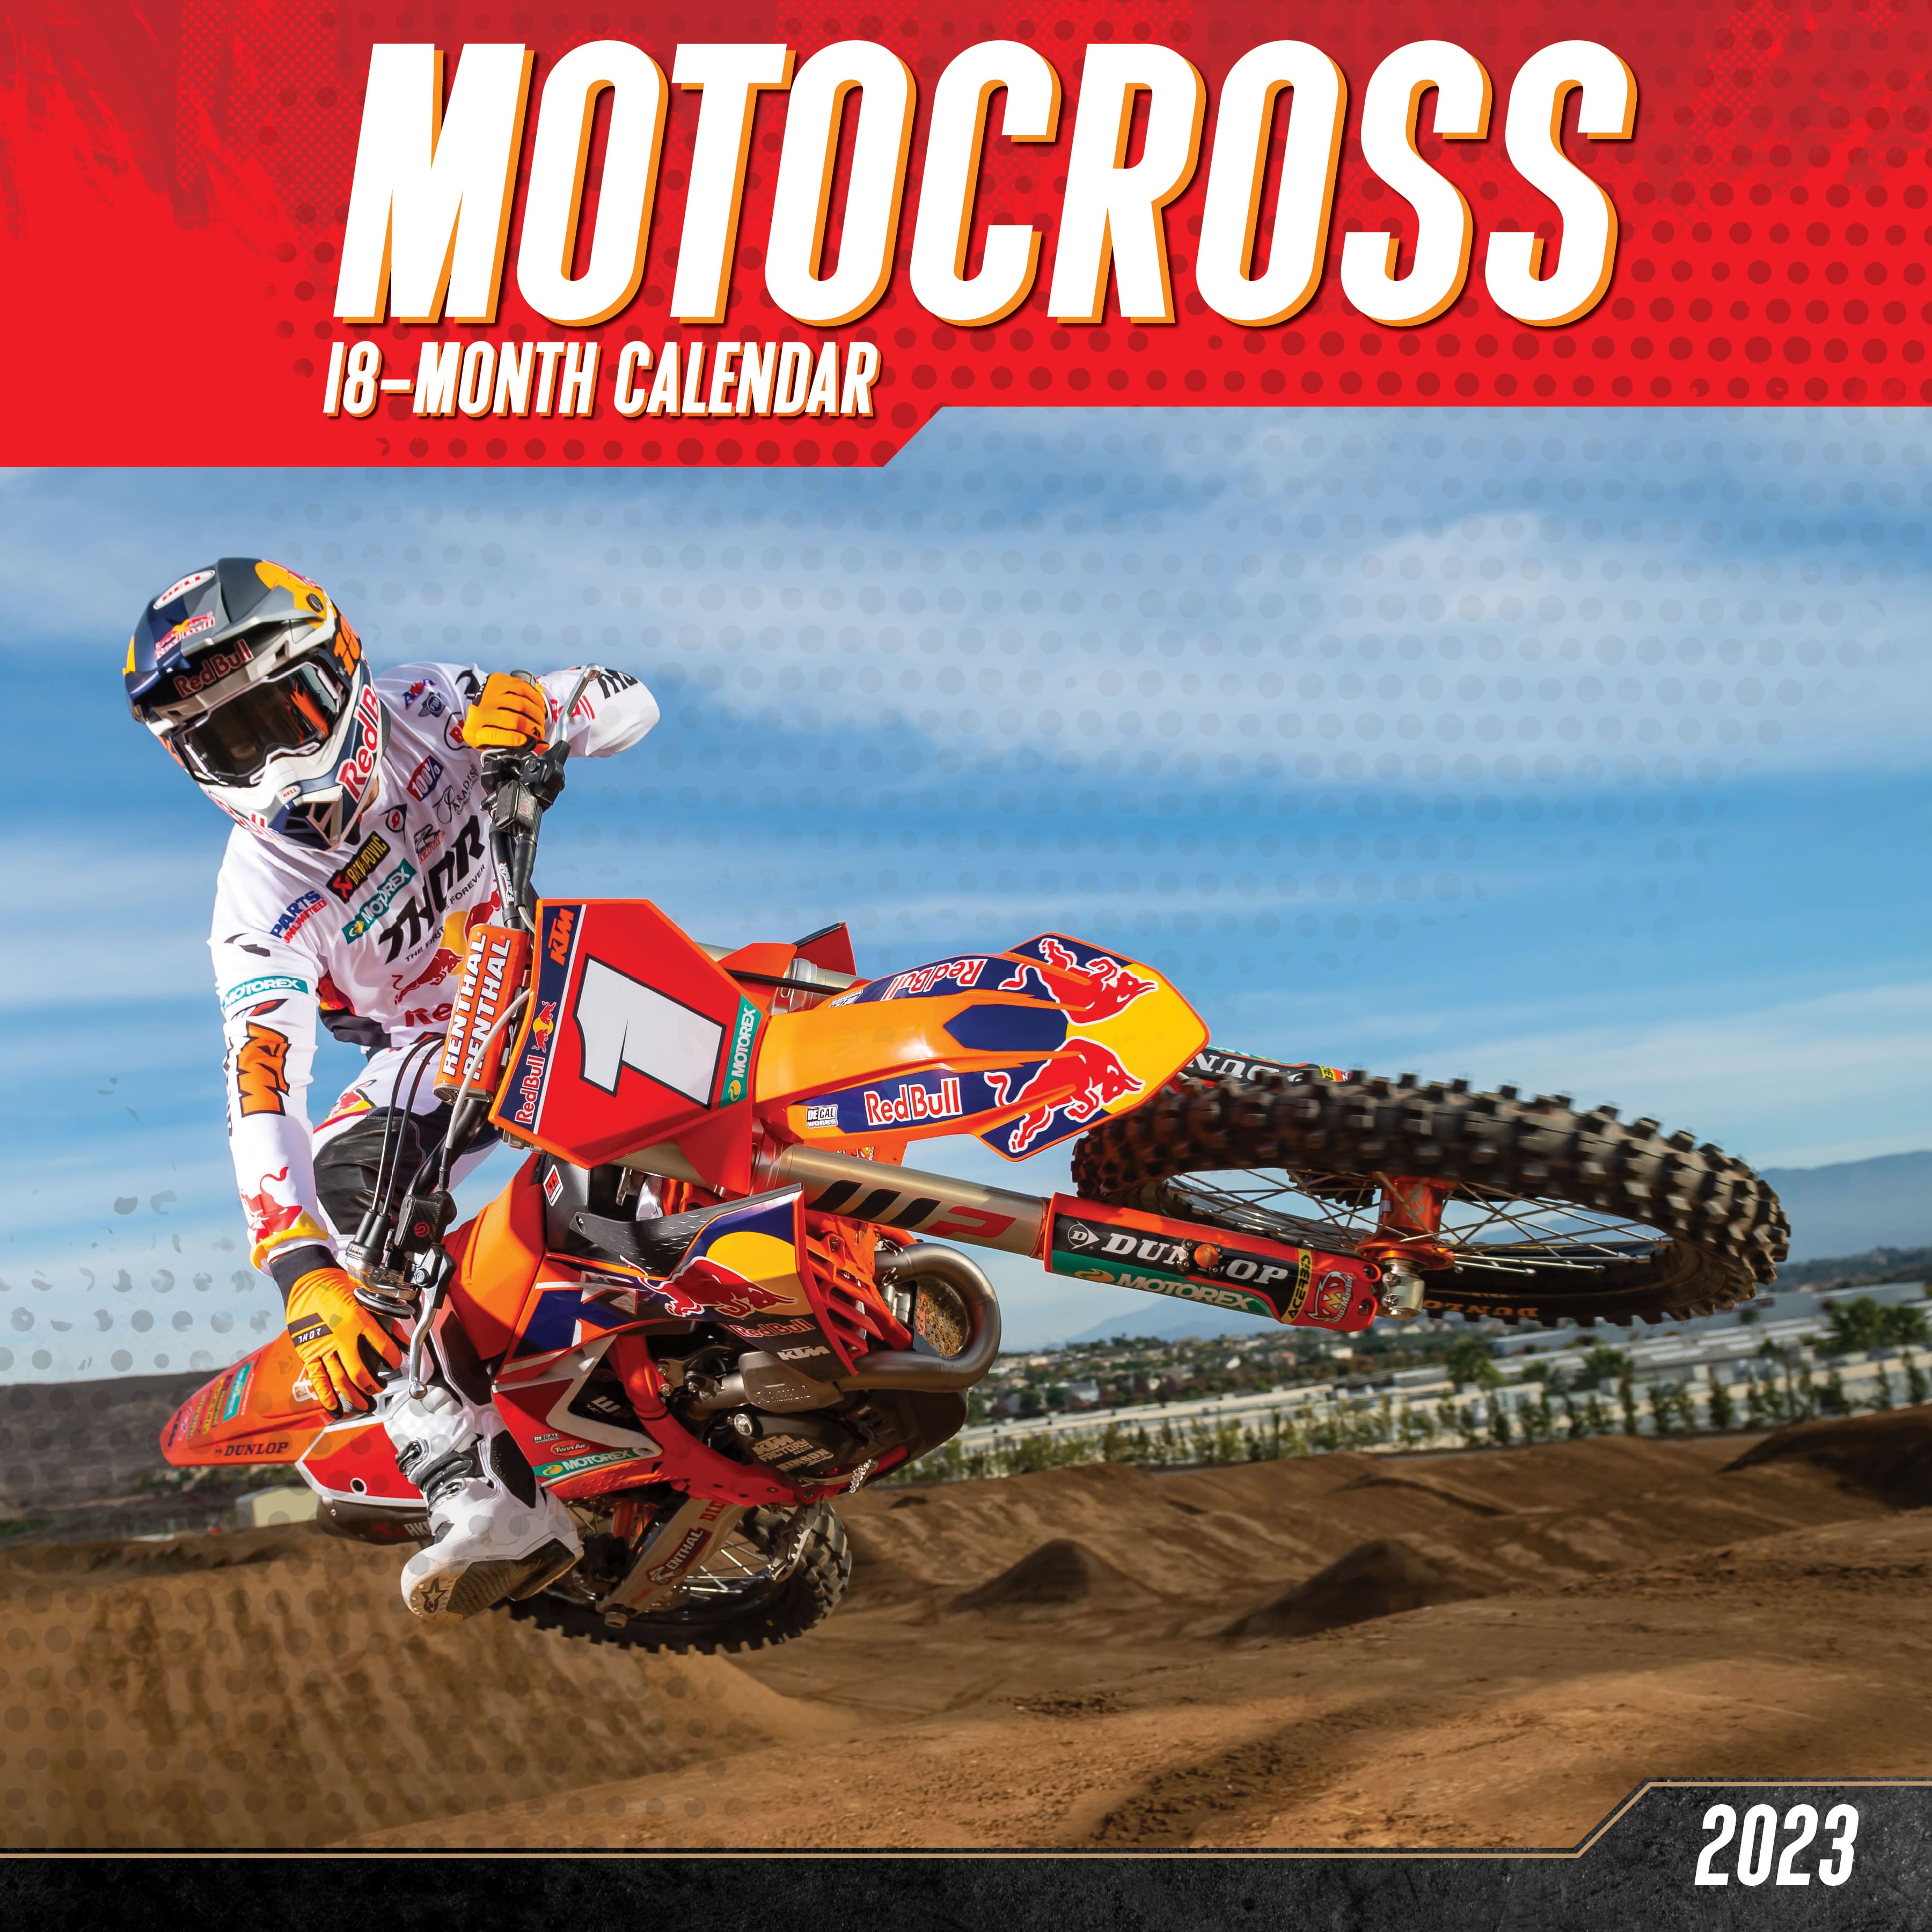 2023 Motocross Wall Calendar Michaels